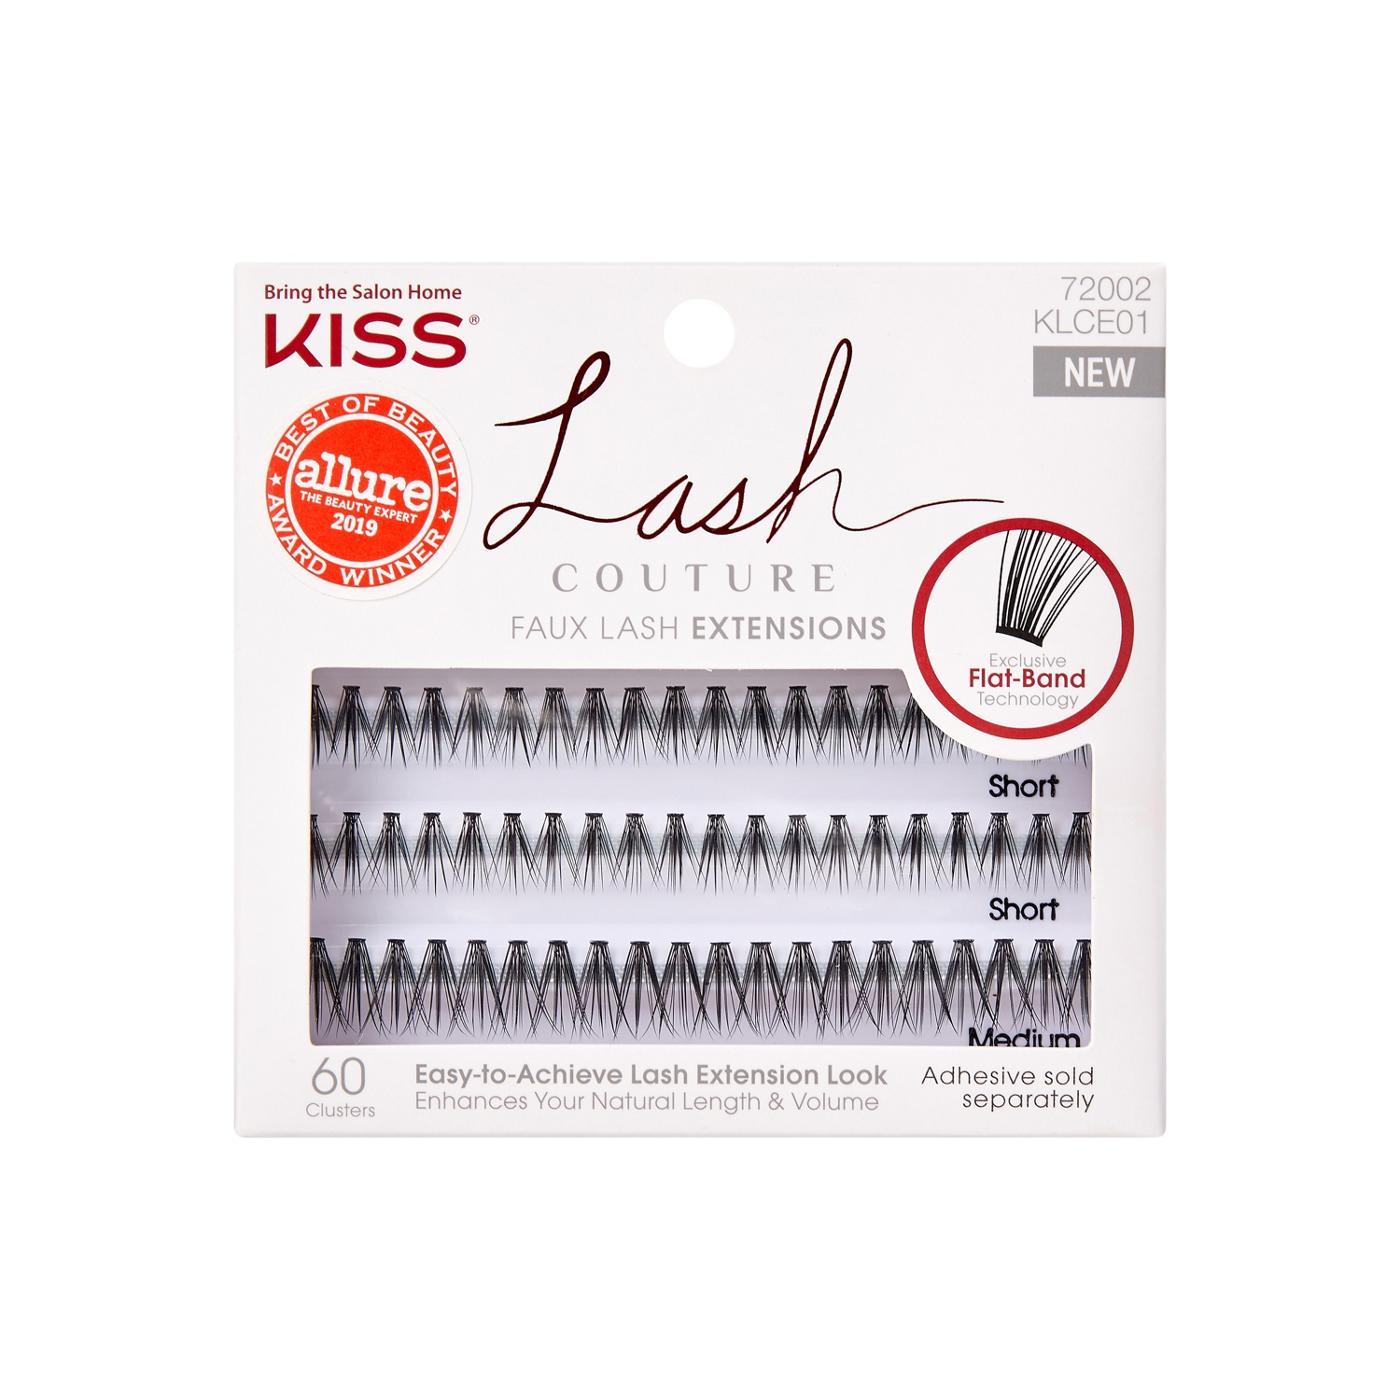 KISS Lash Couture Faux Lash Extensions; image 1 of 3